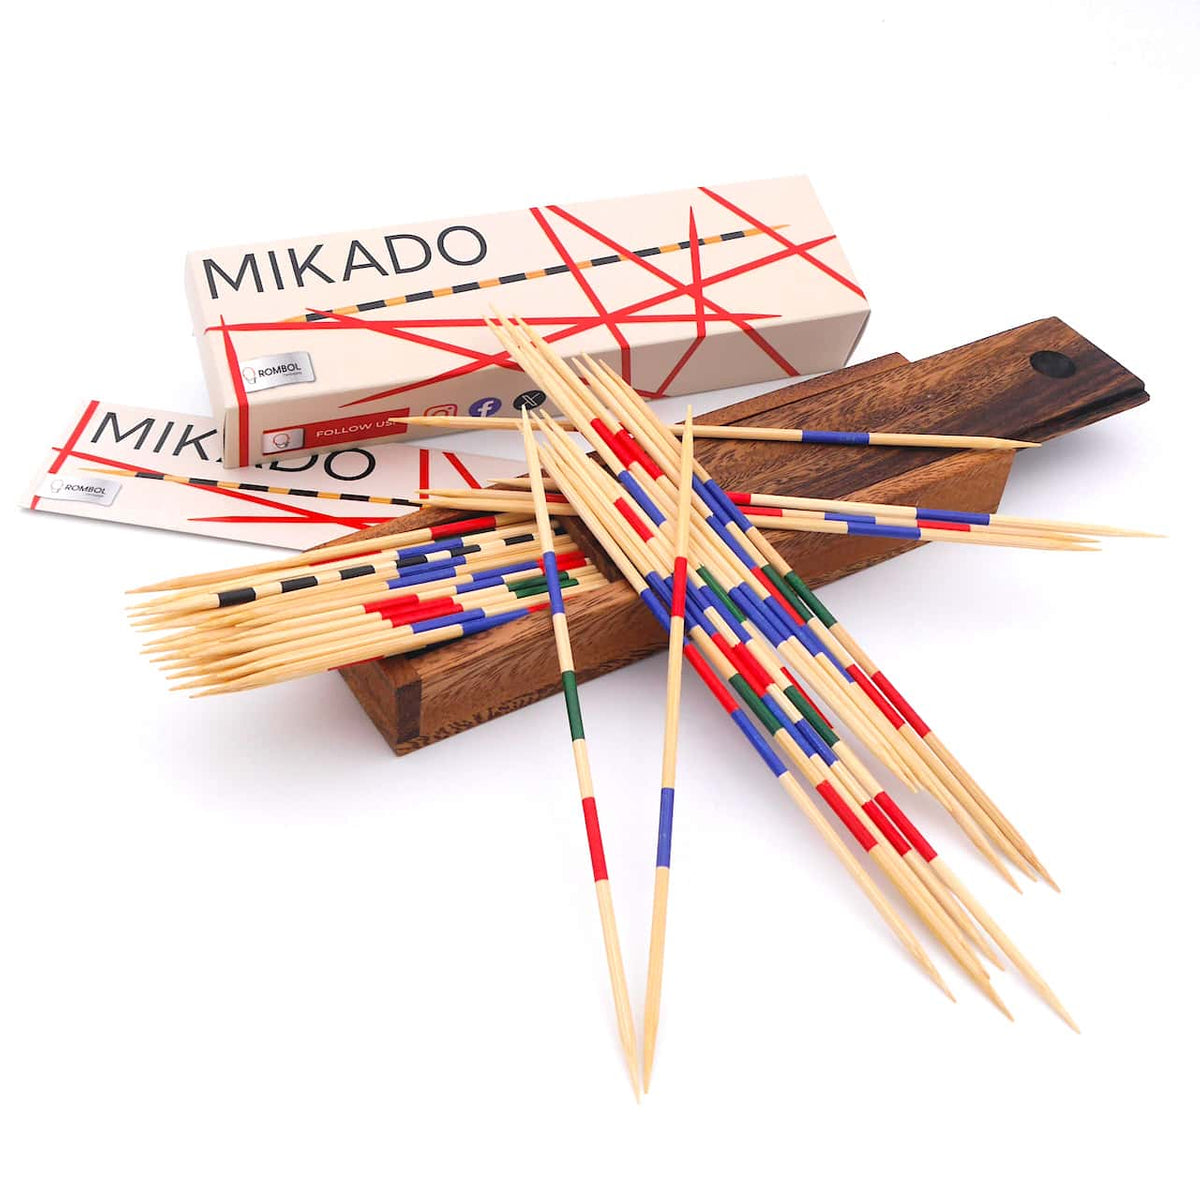 Eine Nahaufnahme eines hölzernen Mikado-Spiels mit bunten Stäbchen, die kreuz und quer übereinander liegen.